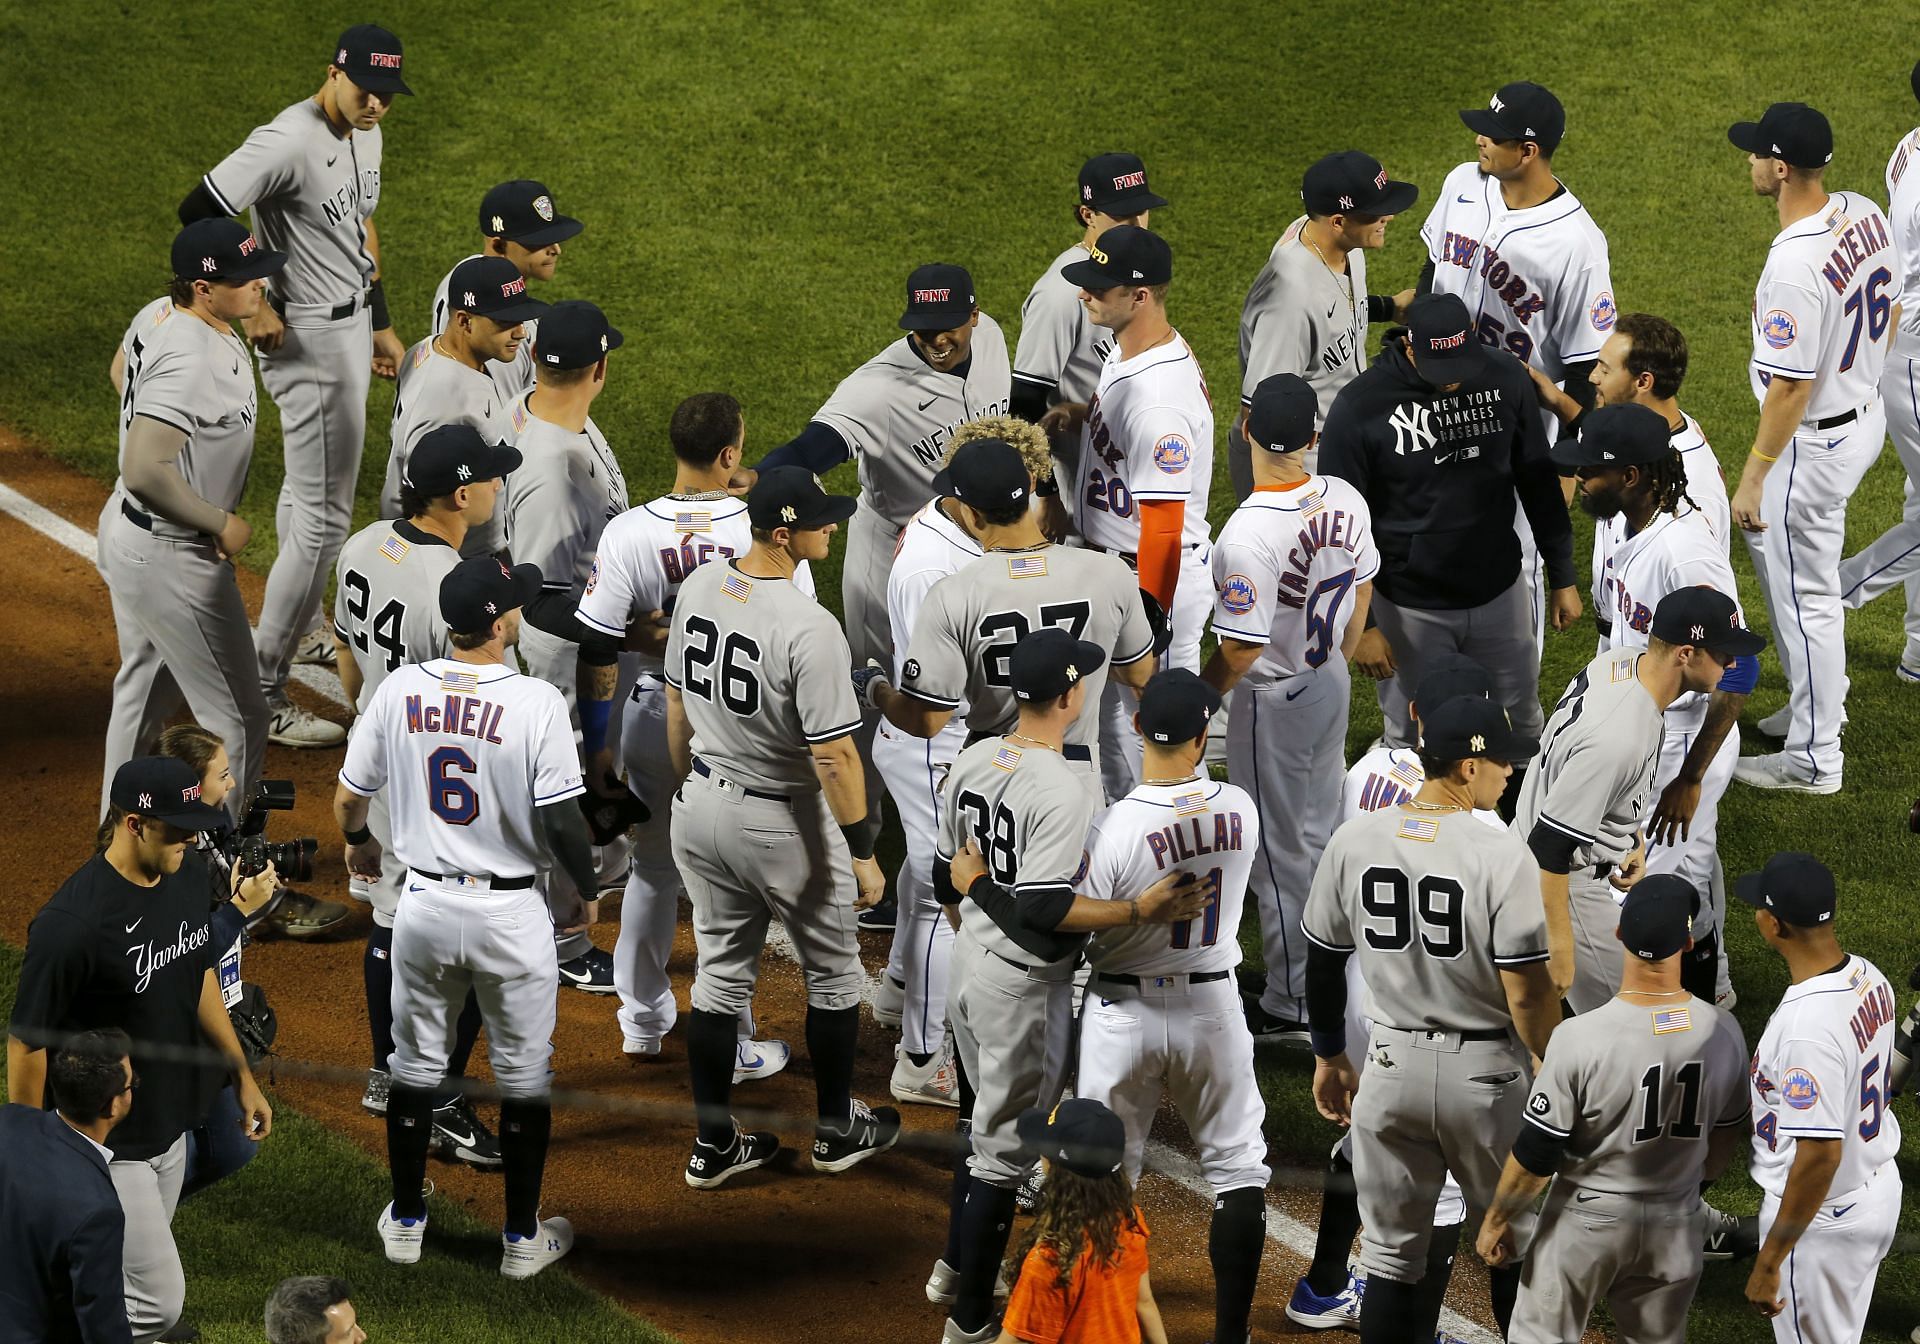 Day #2 - The New York Yankees — Rounding Third